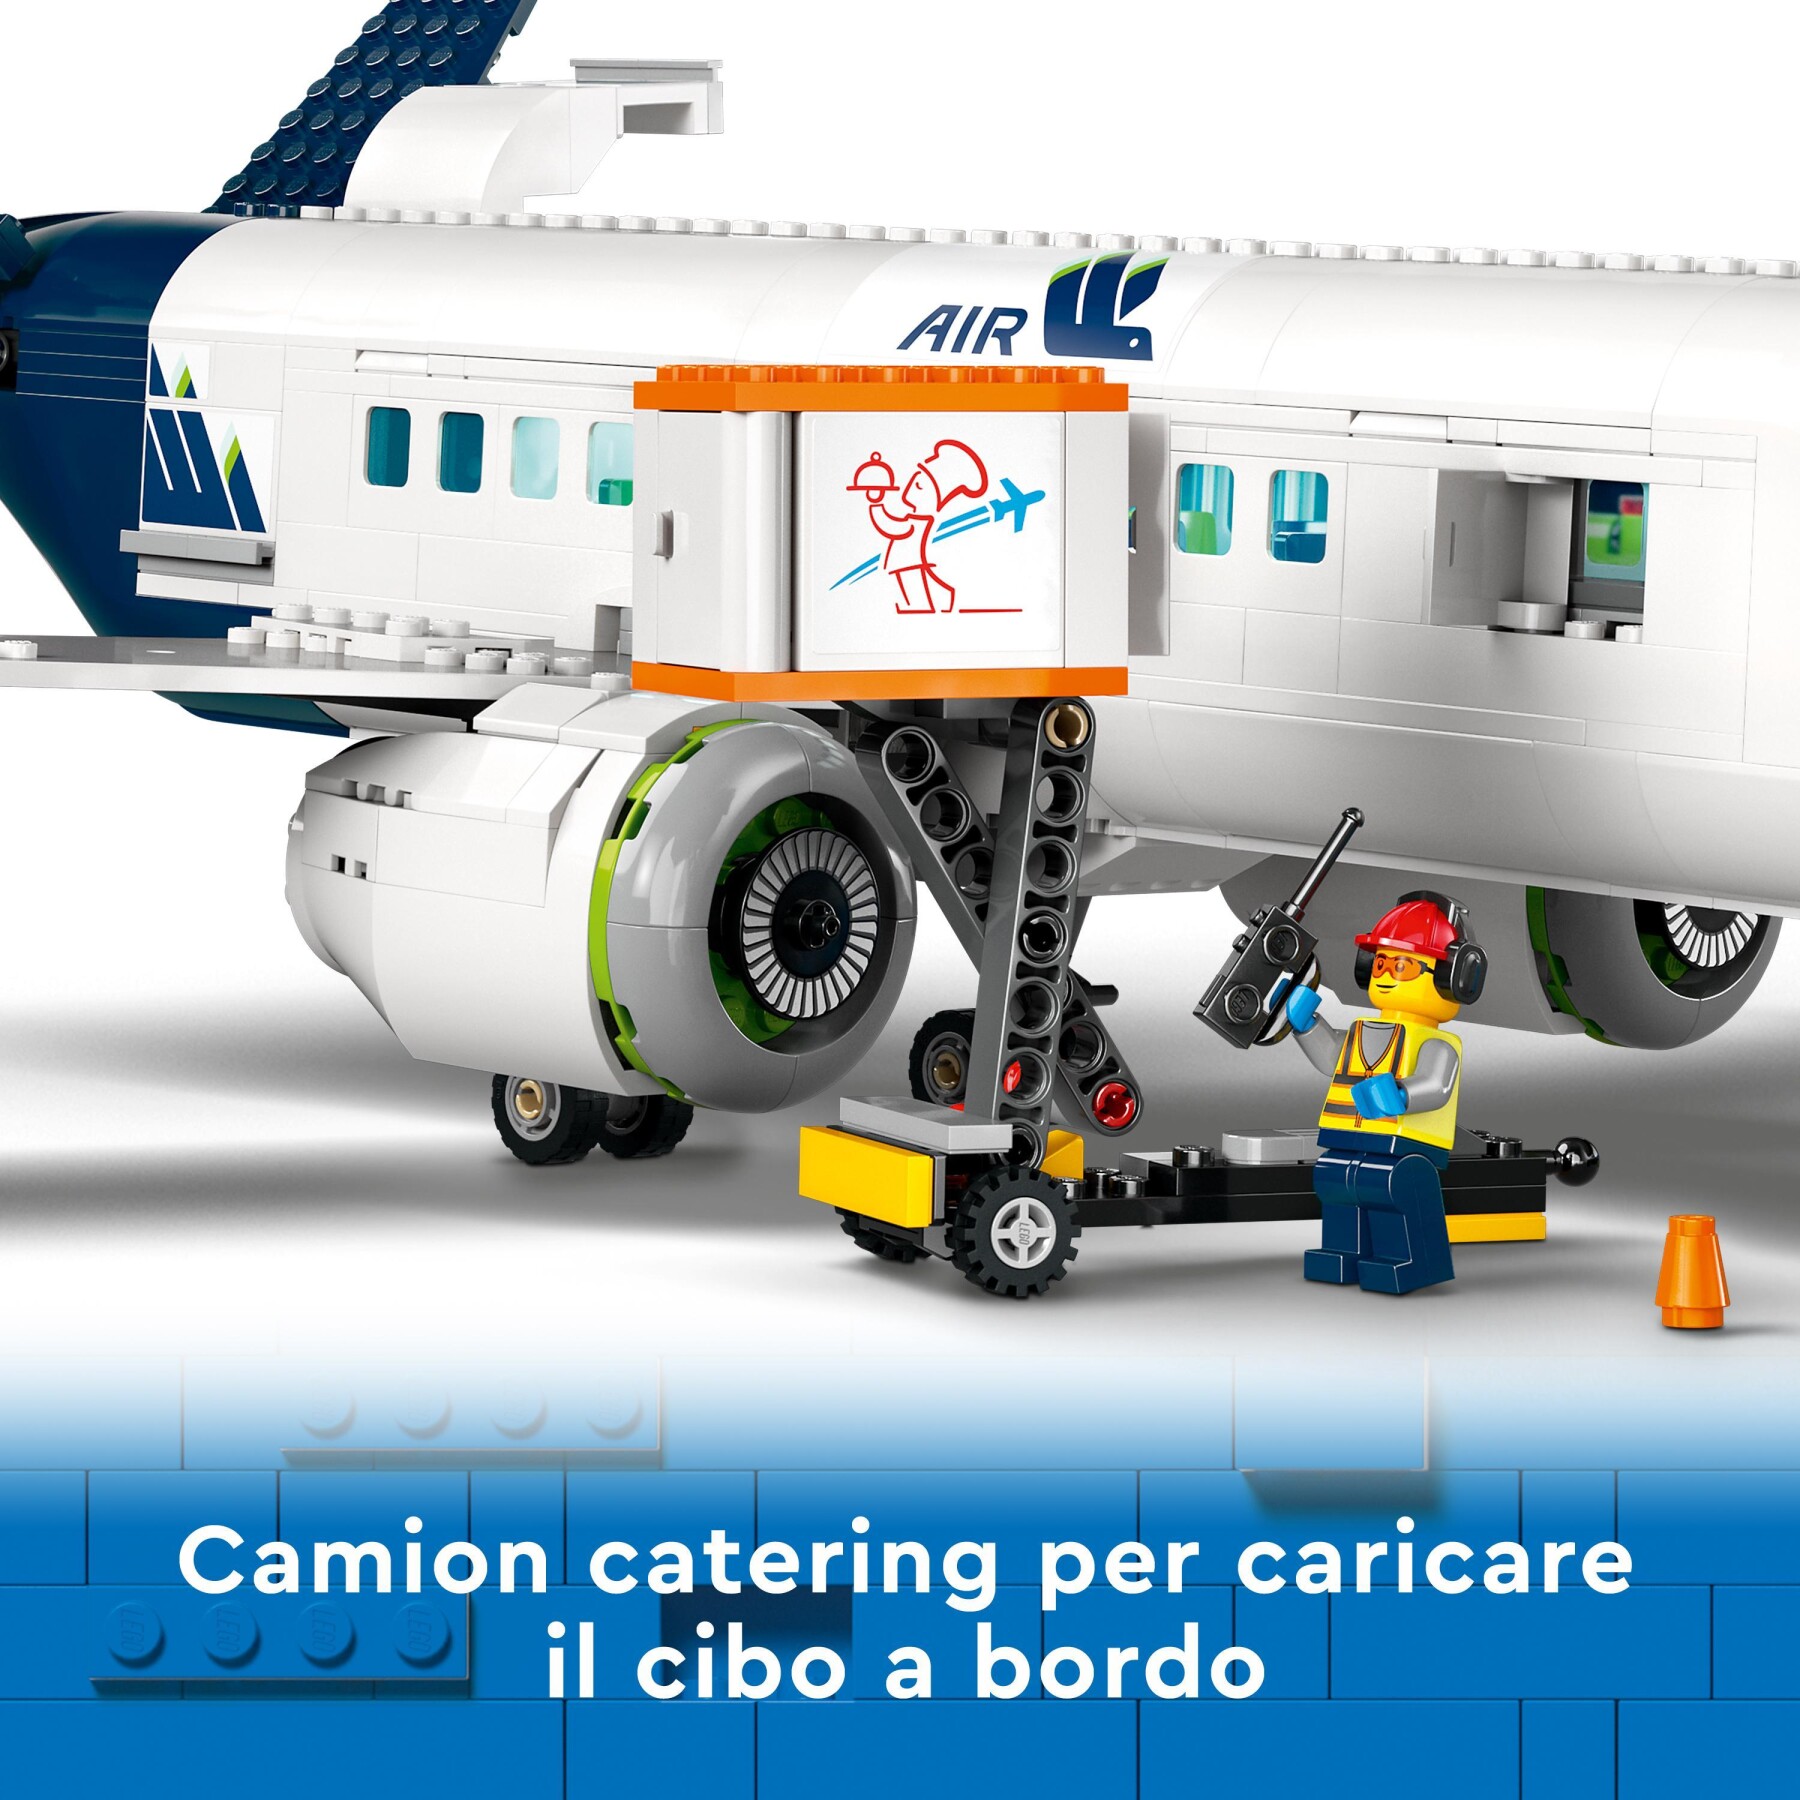 Lego city 60367 aereo passeggeri, modellino di aeroplano giocattolo da  costruire con 9 minifigure e veicoli dell'aeroporto - Toys Center